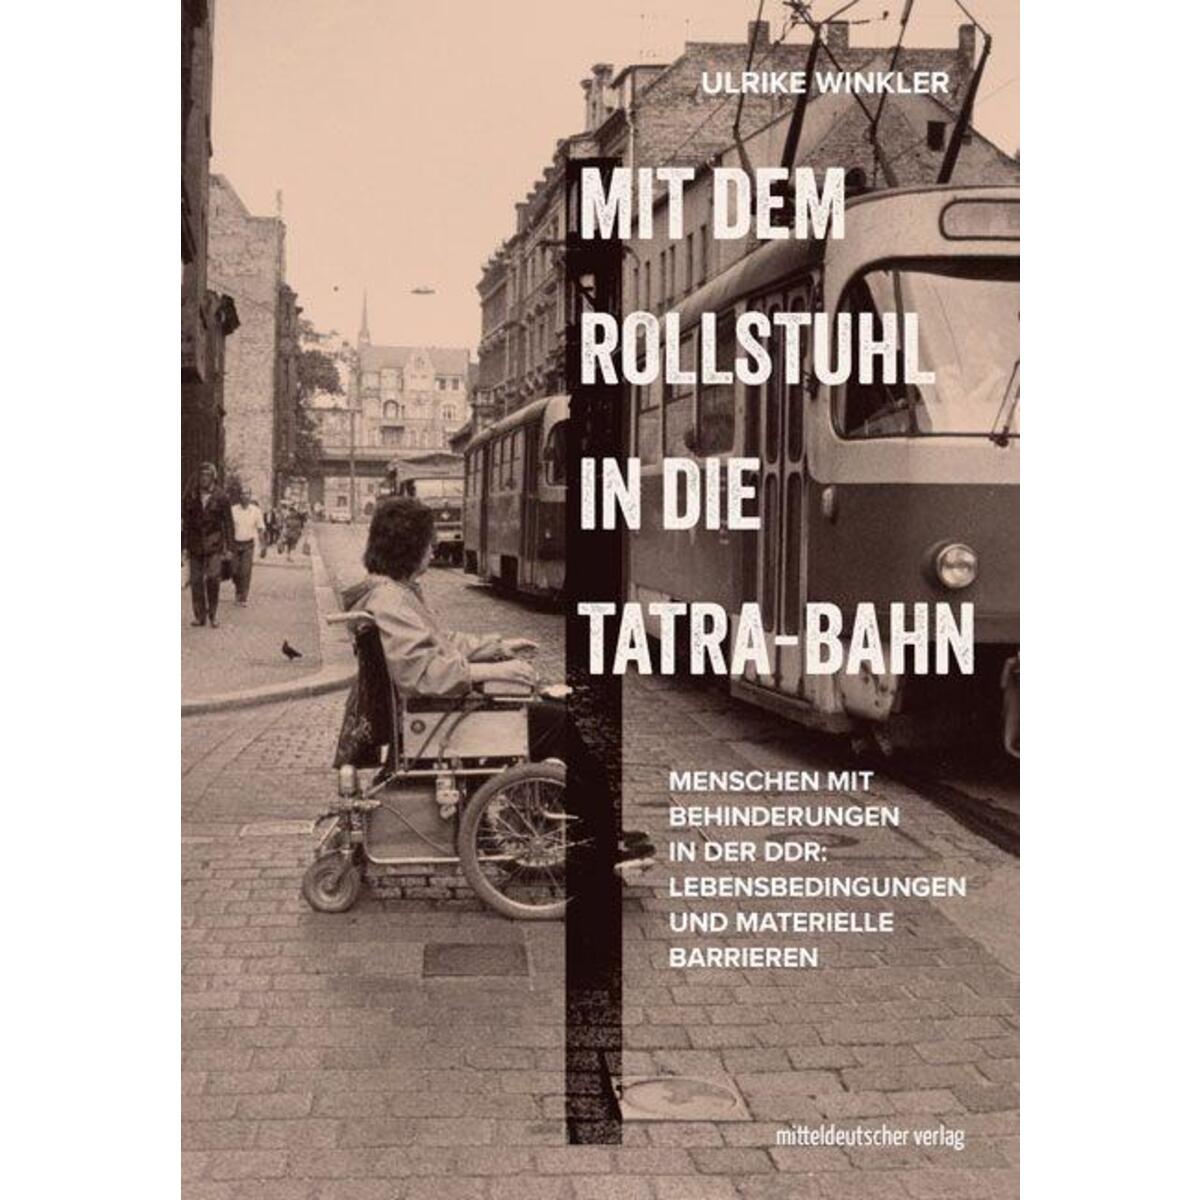 Mit dem Rollstuhl in die Tatra-Bahn von Mitteldeutscher Verlag